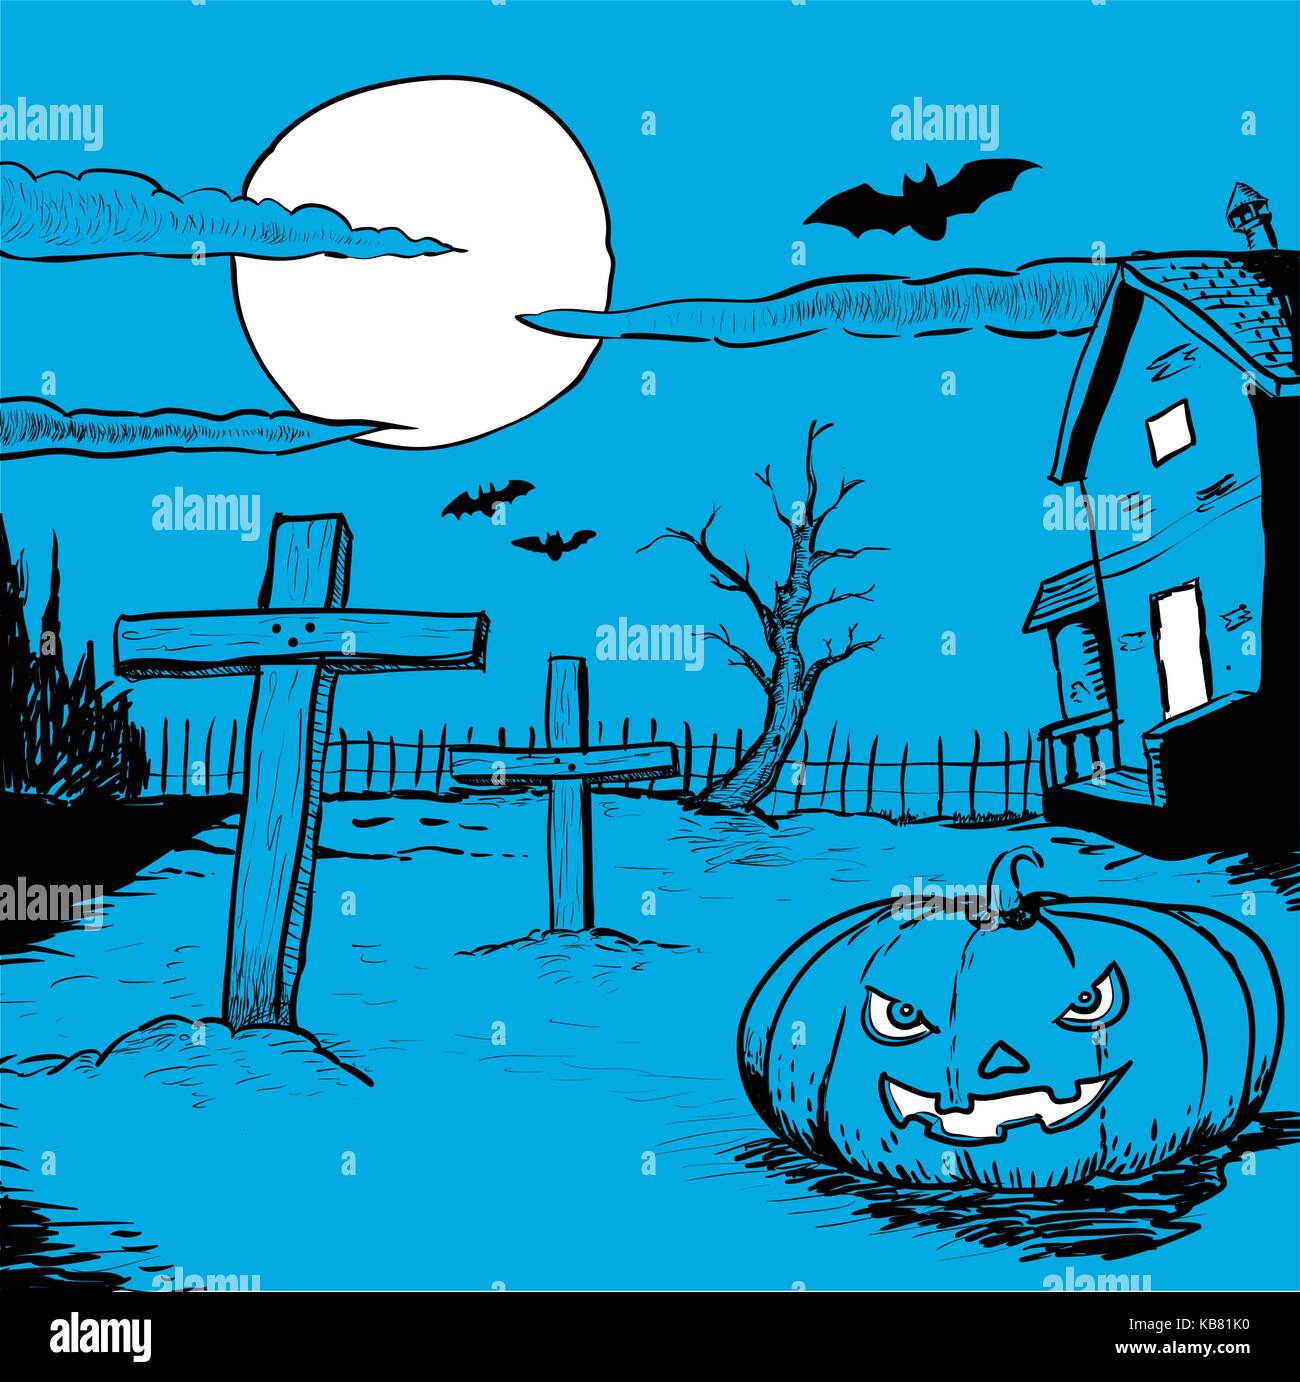 La main de l'halloween, illustration de nuit paysage mystérieux avec cimetière, tête de citrouille, les chauves-souris et la pleine lune Illustration de Vecteur